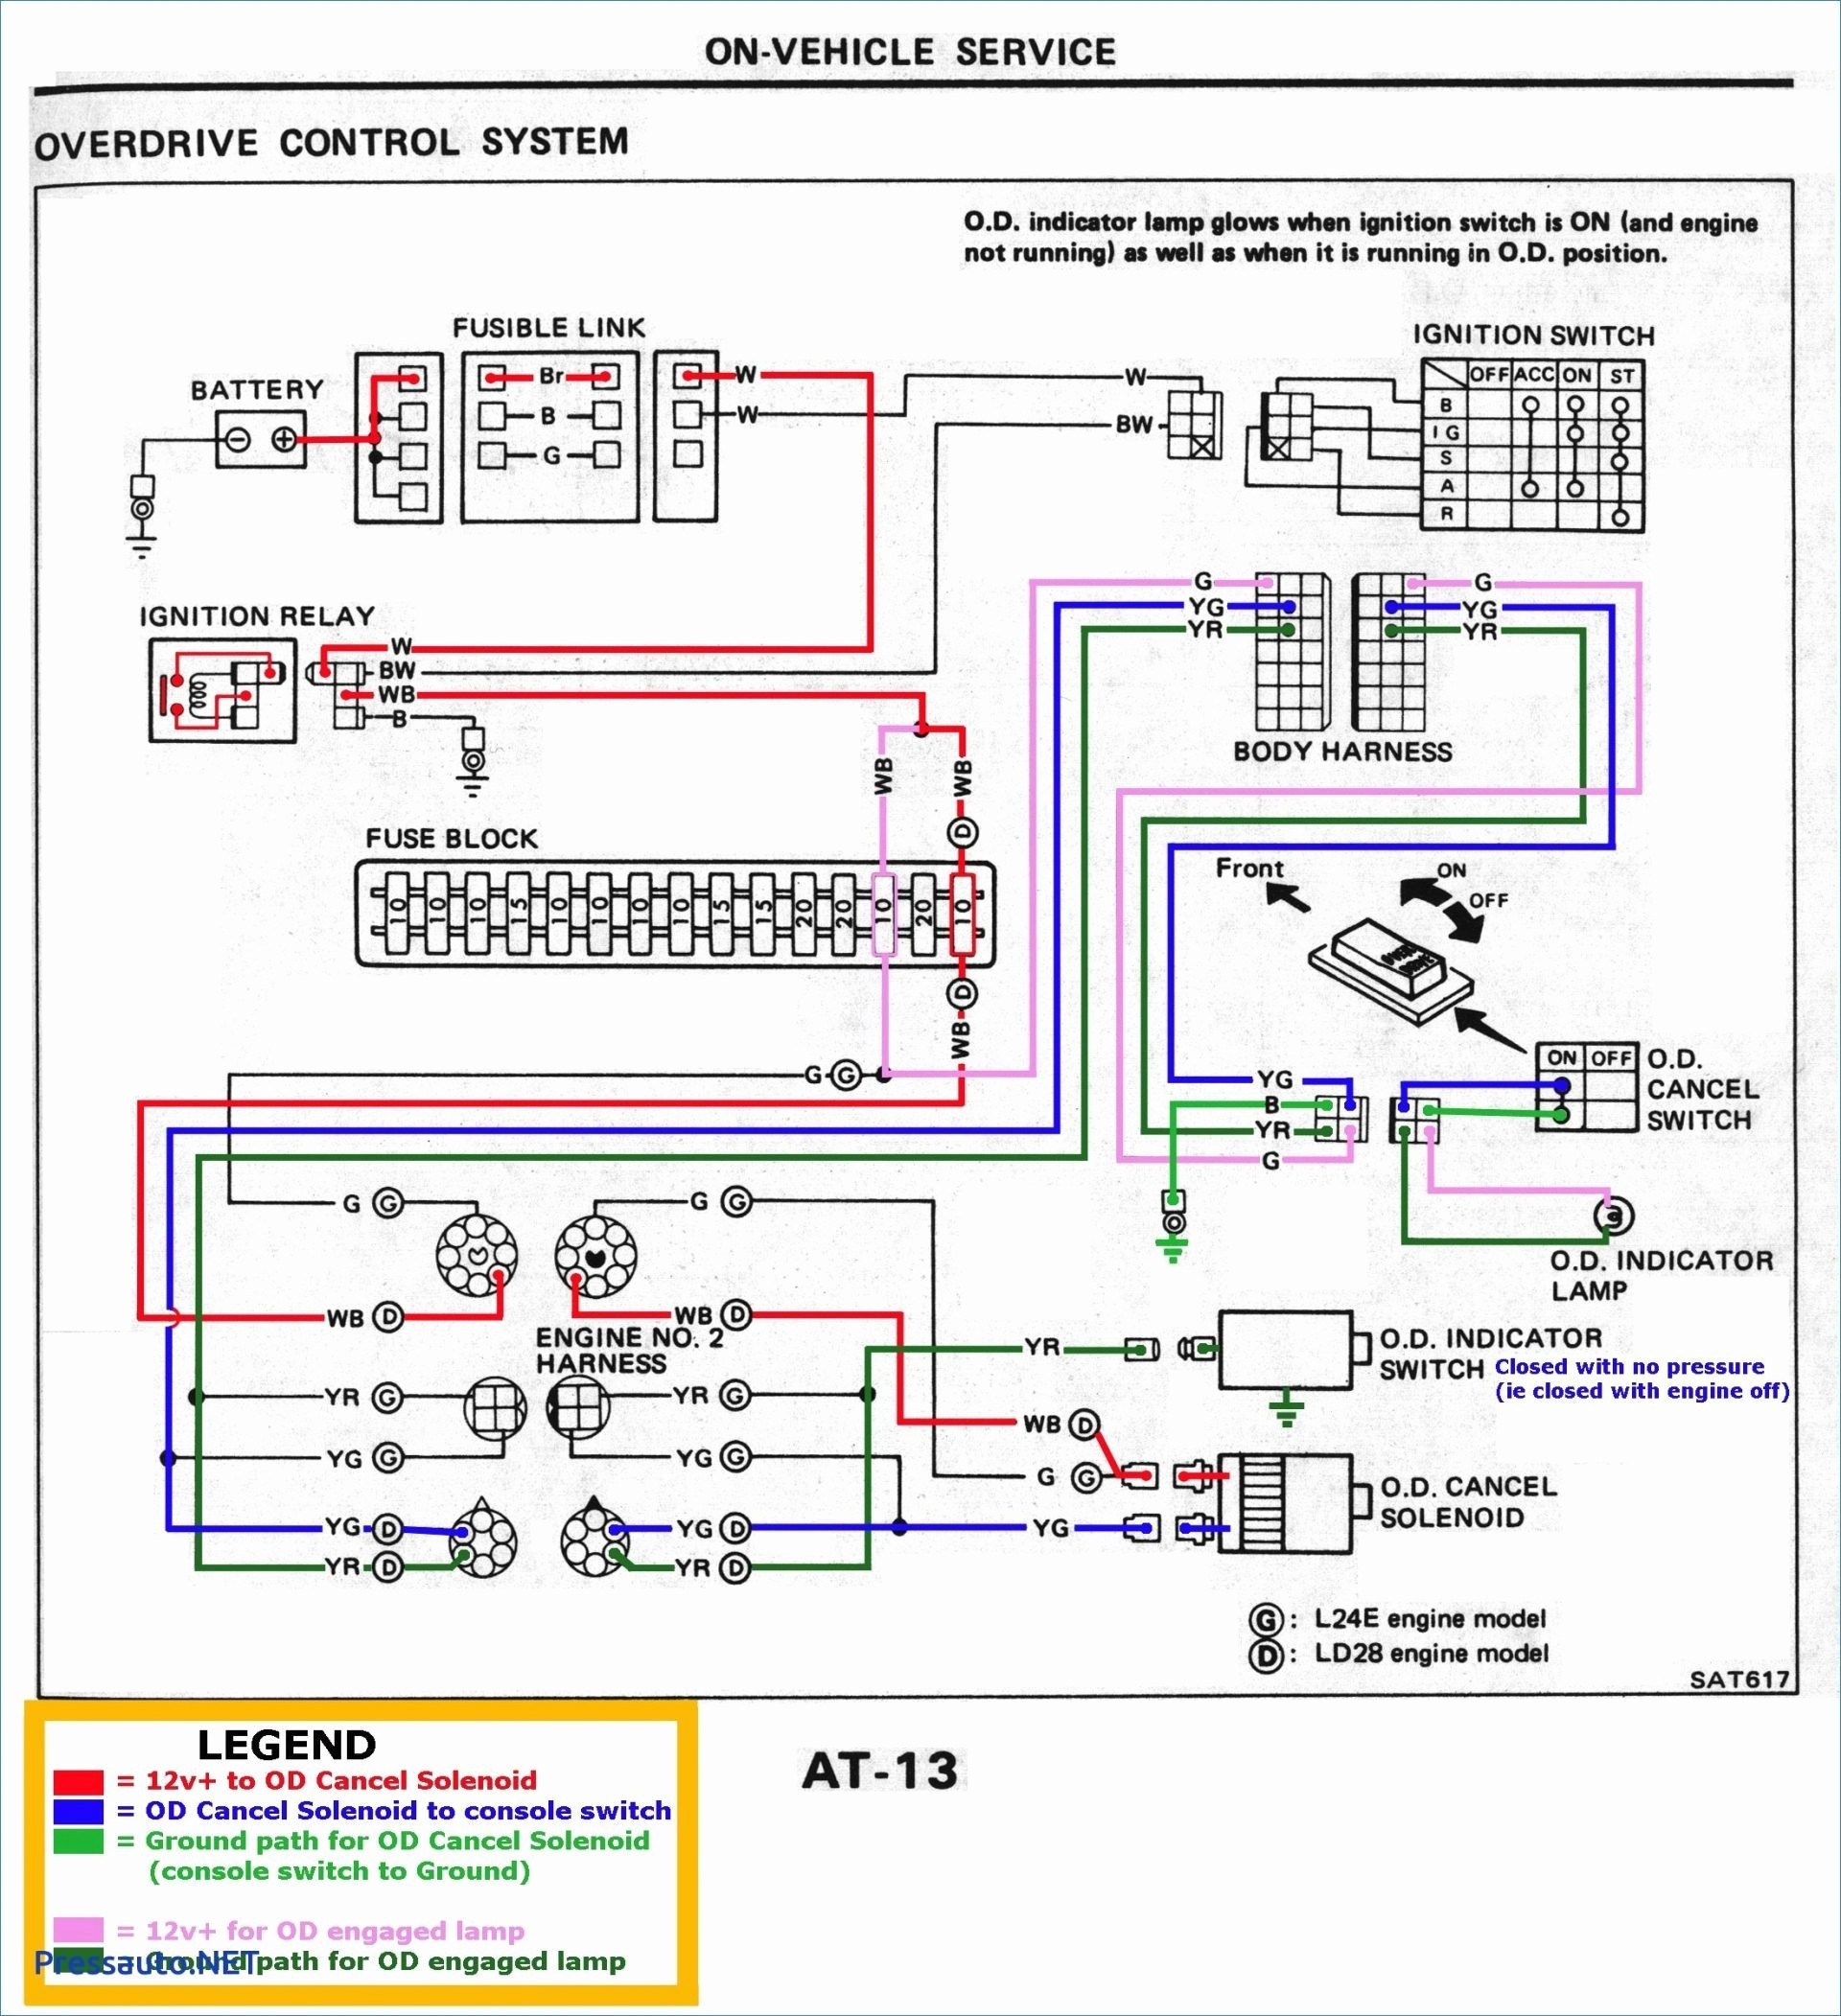 Alternator Wiring Diagram Chevy Recent Wiring Diagram for Alternator Conversion Valid Wiring Diagram Chevy